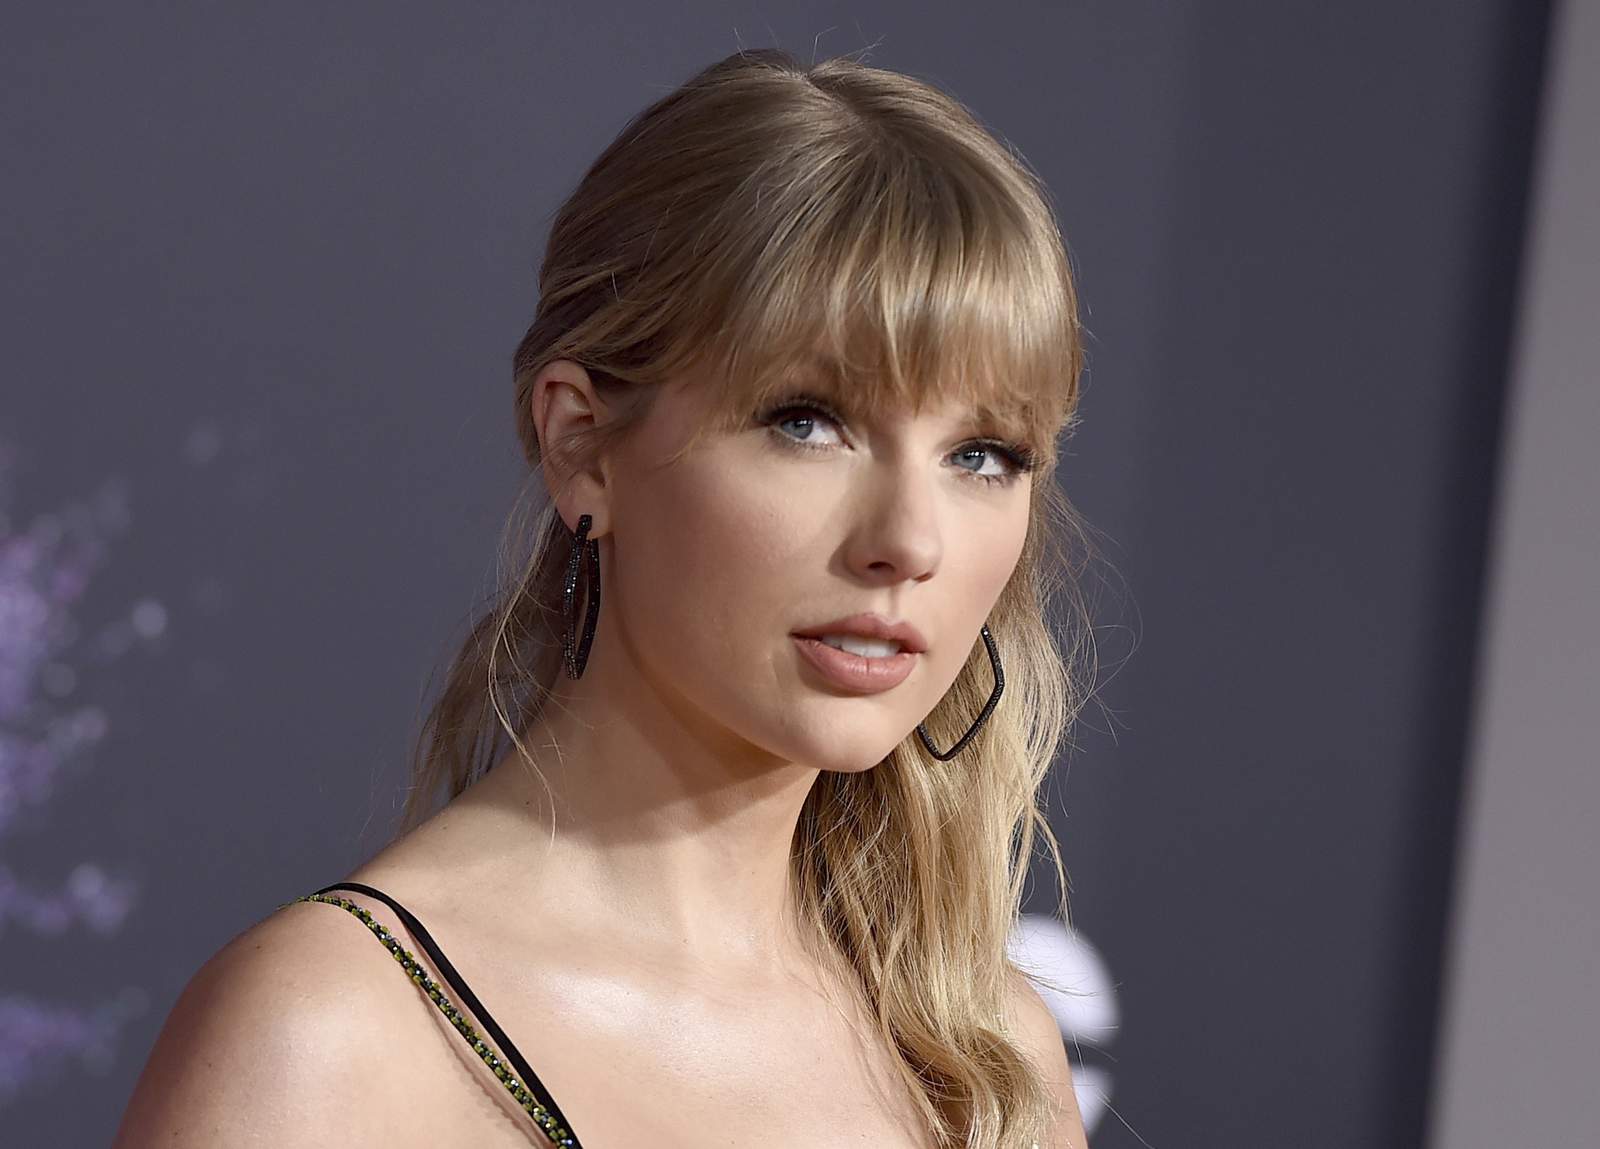 Police: Stalker arrested at Taylor Swift’s New York building